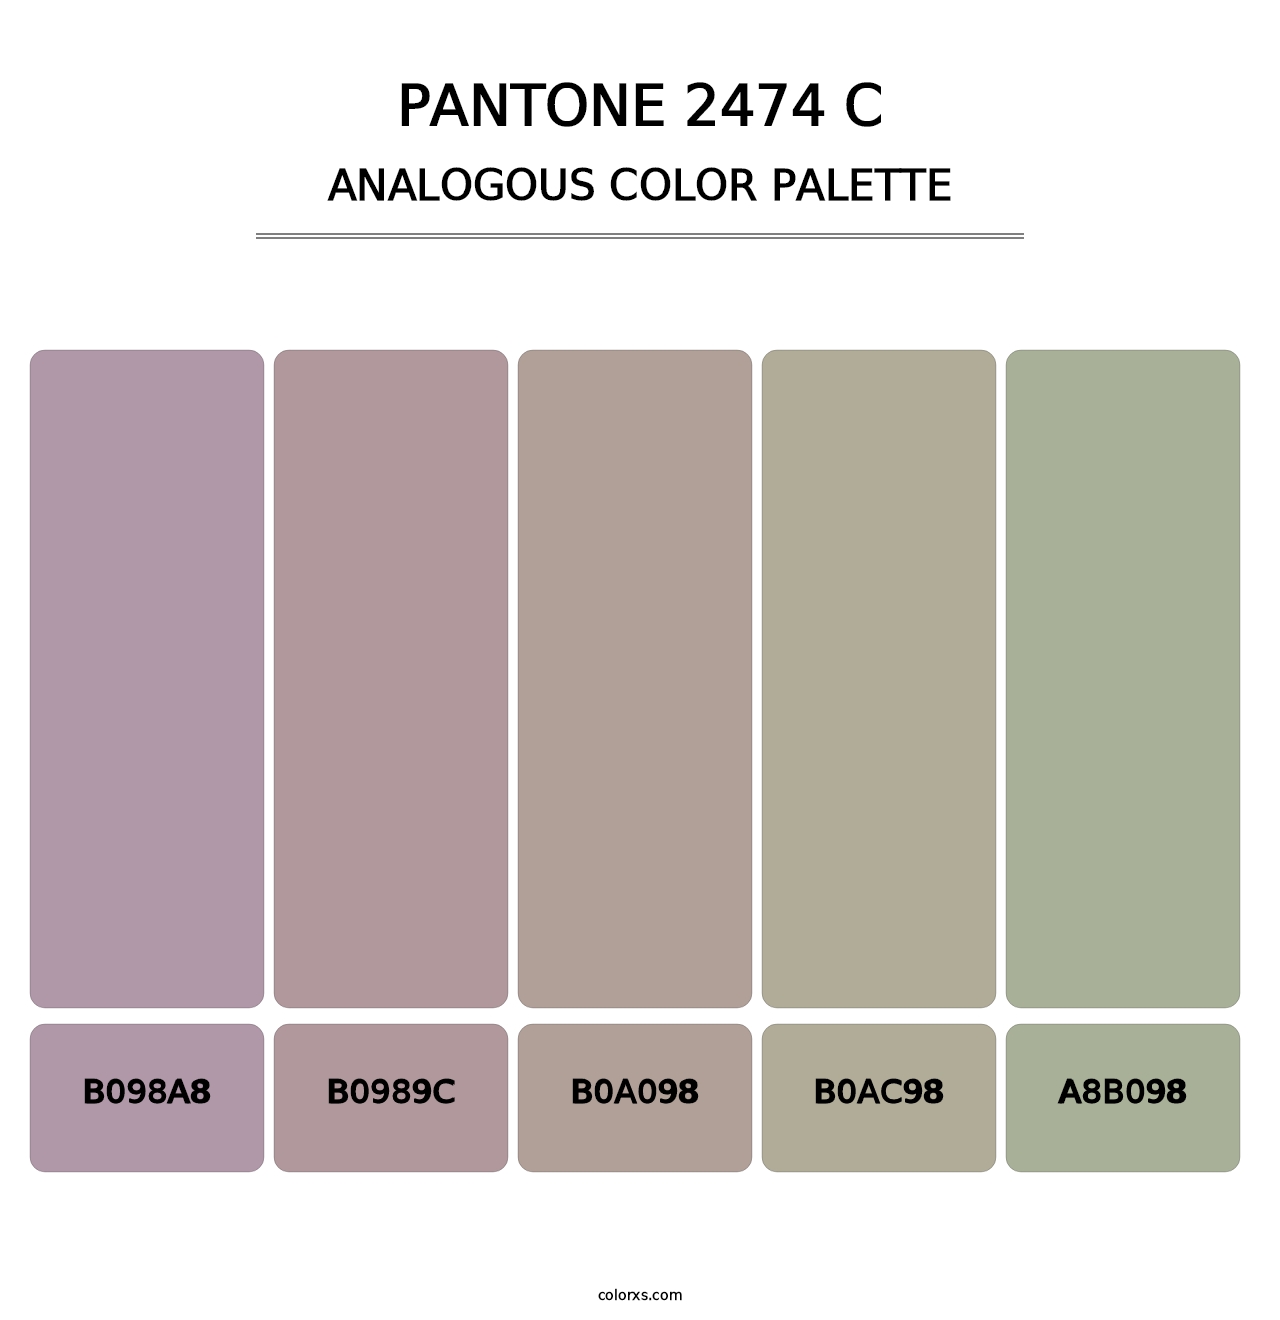 PANTONE 2474 C - Analogous Color Palette